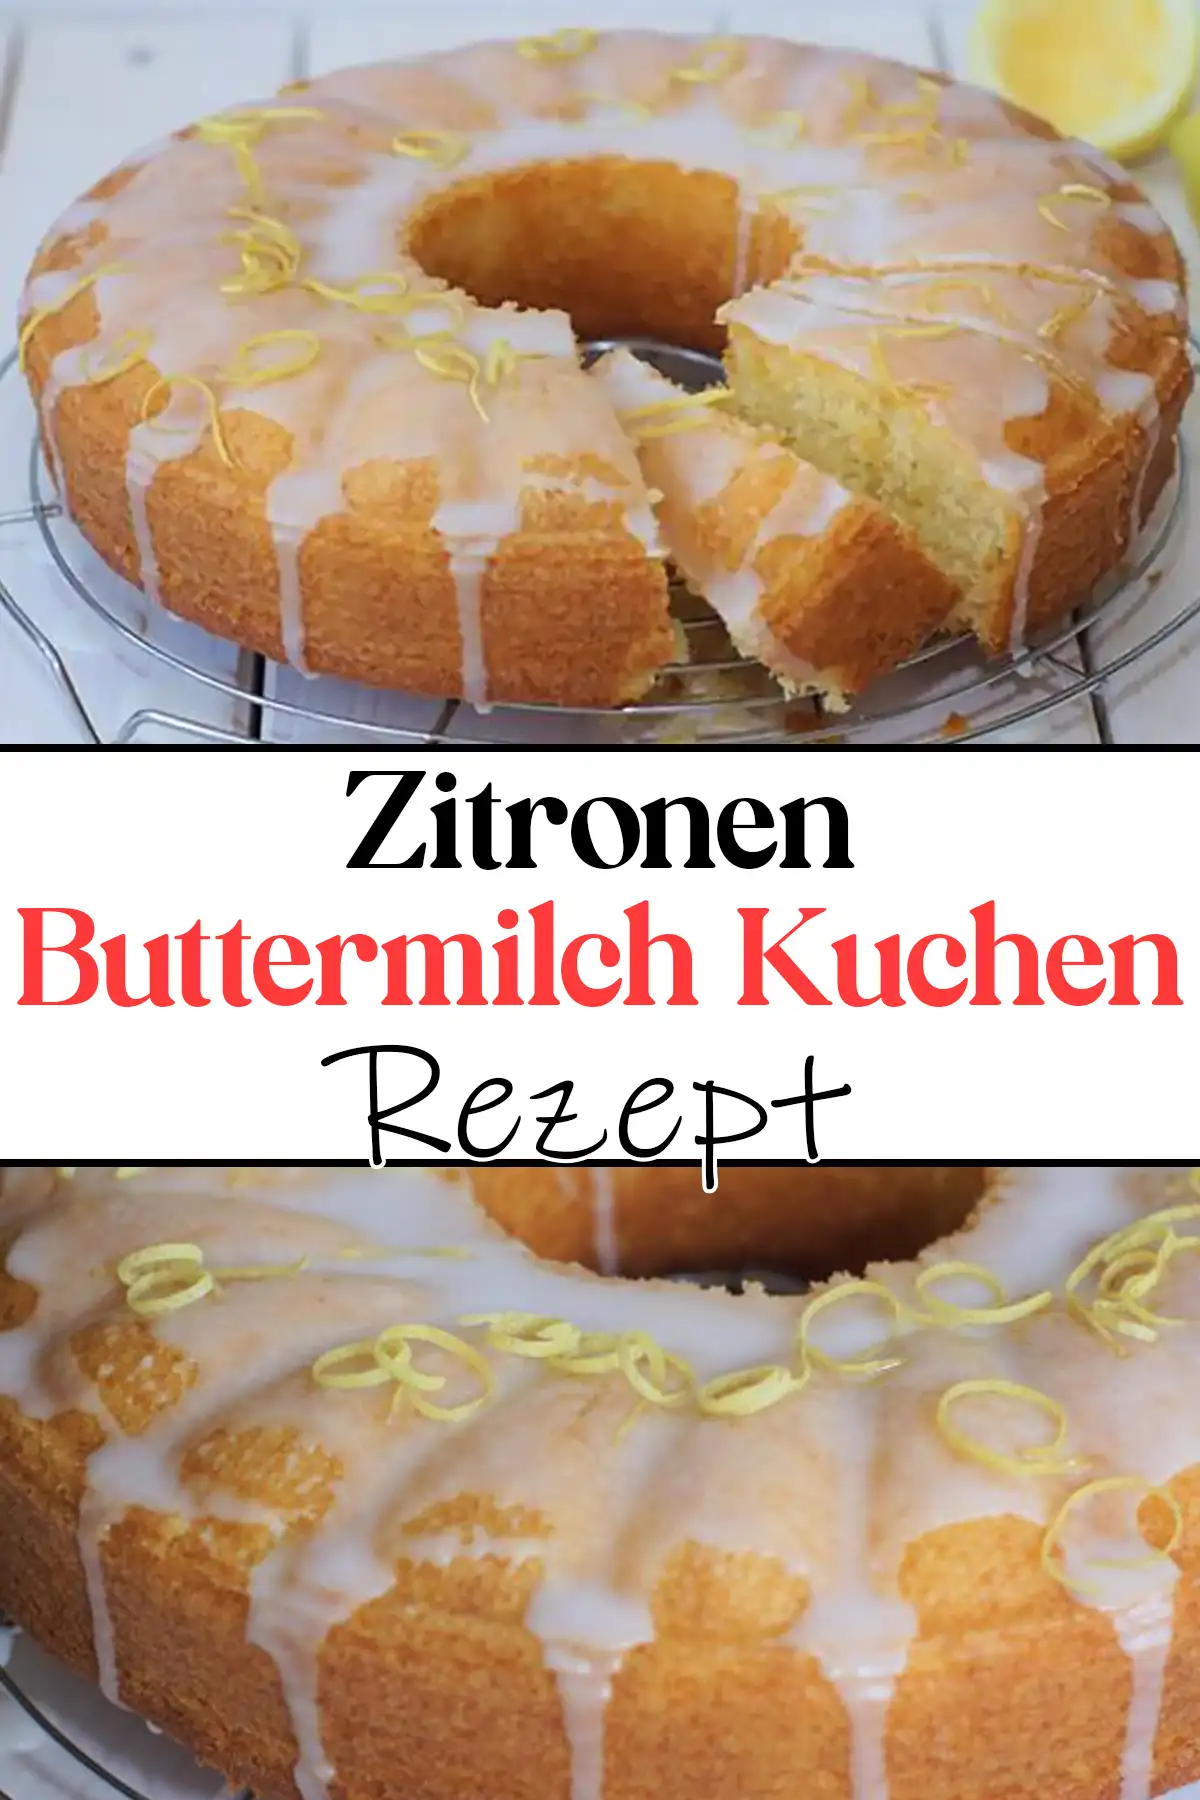 Zitronen-Buttermilch Kuchen Rezept